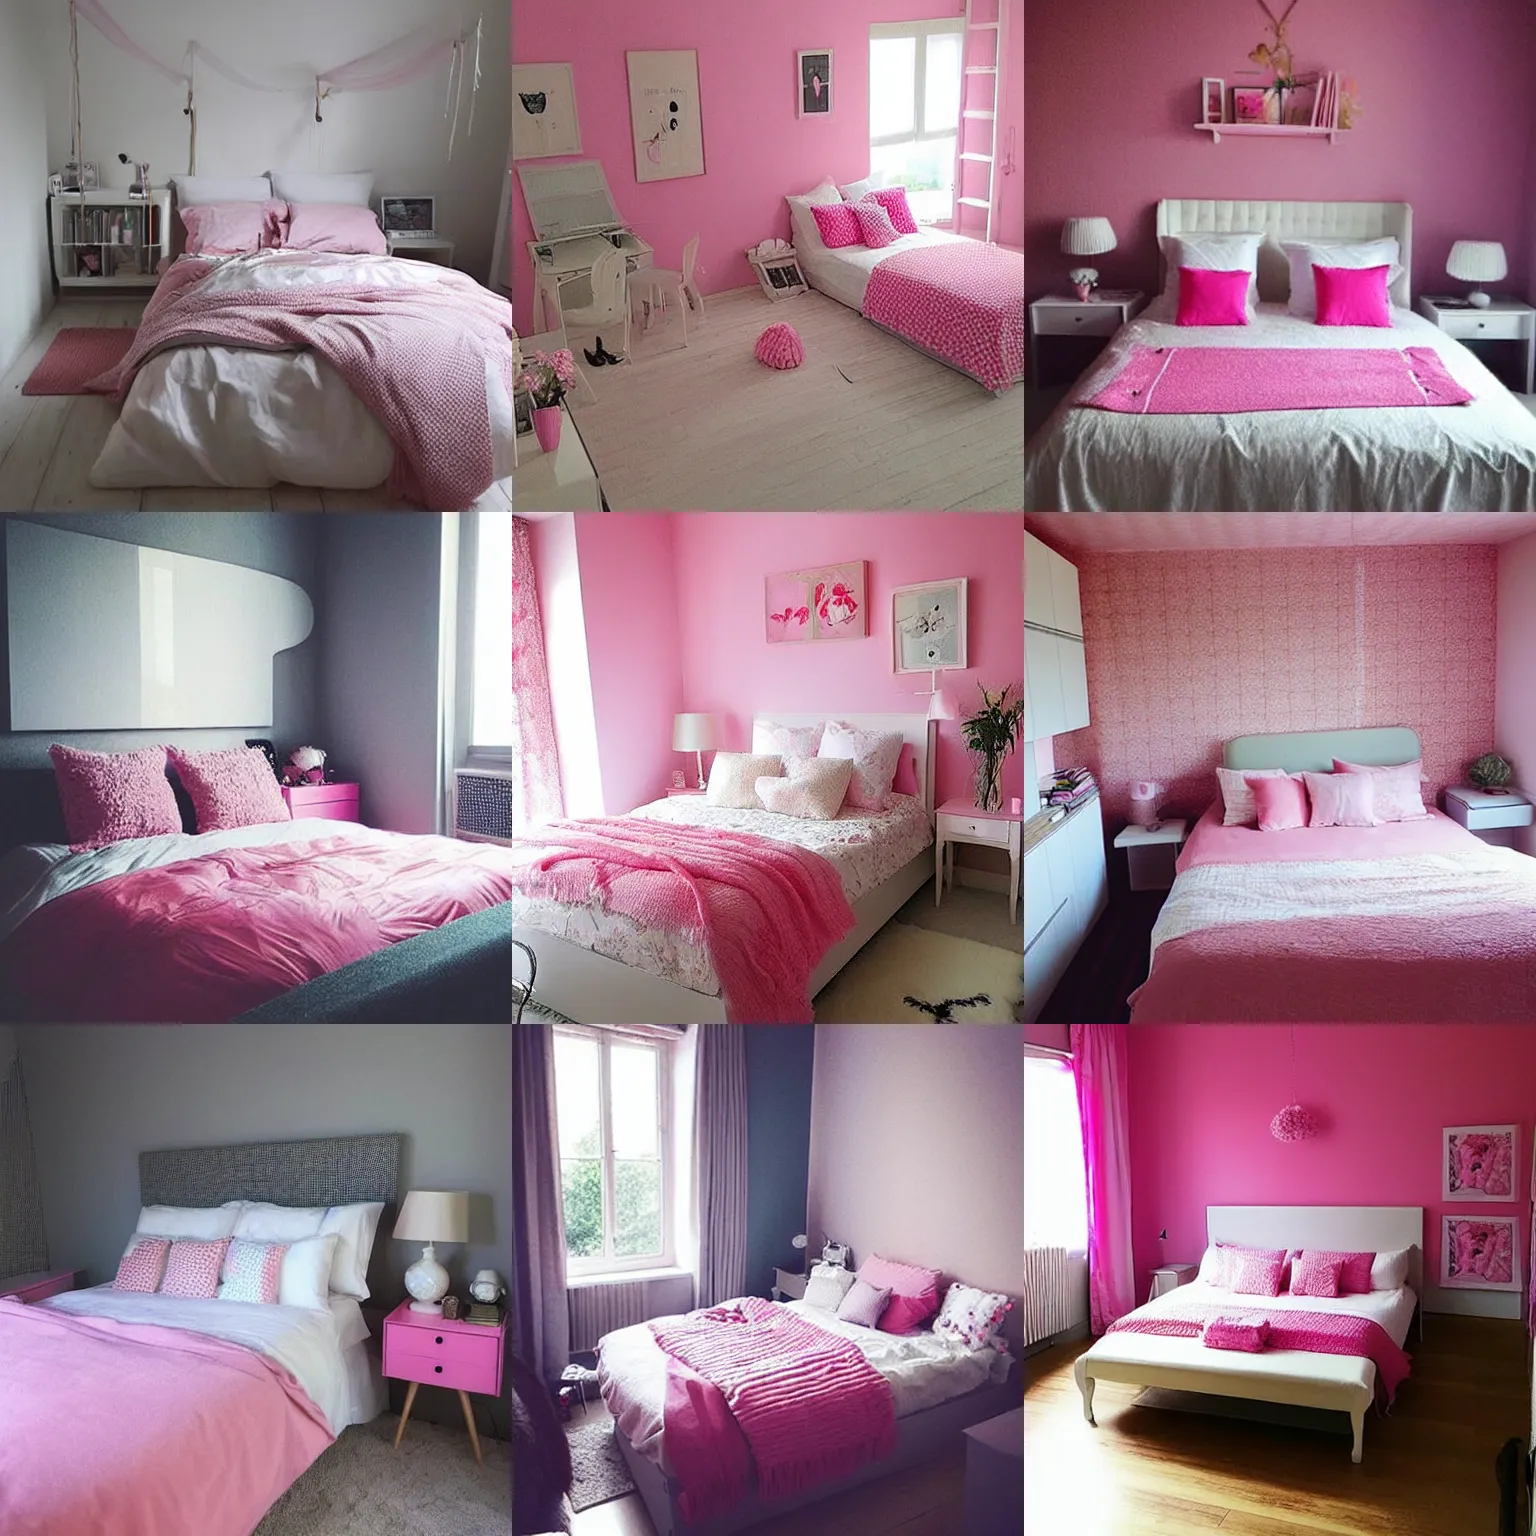 Prompt: “pink bedroom”